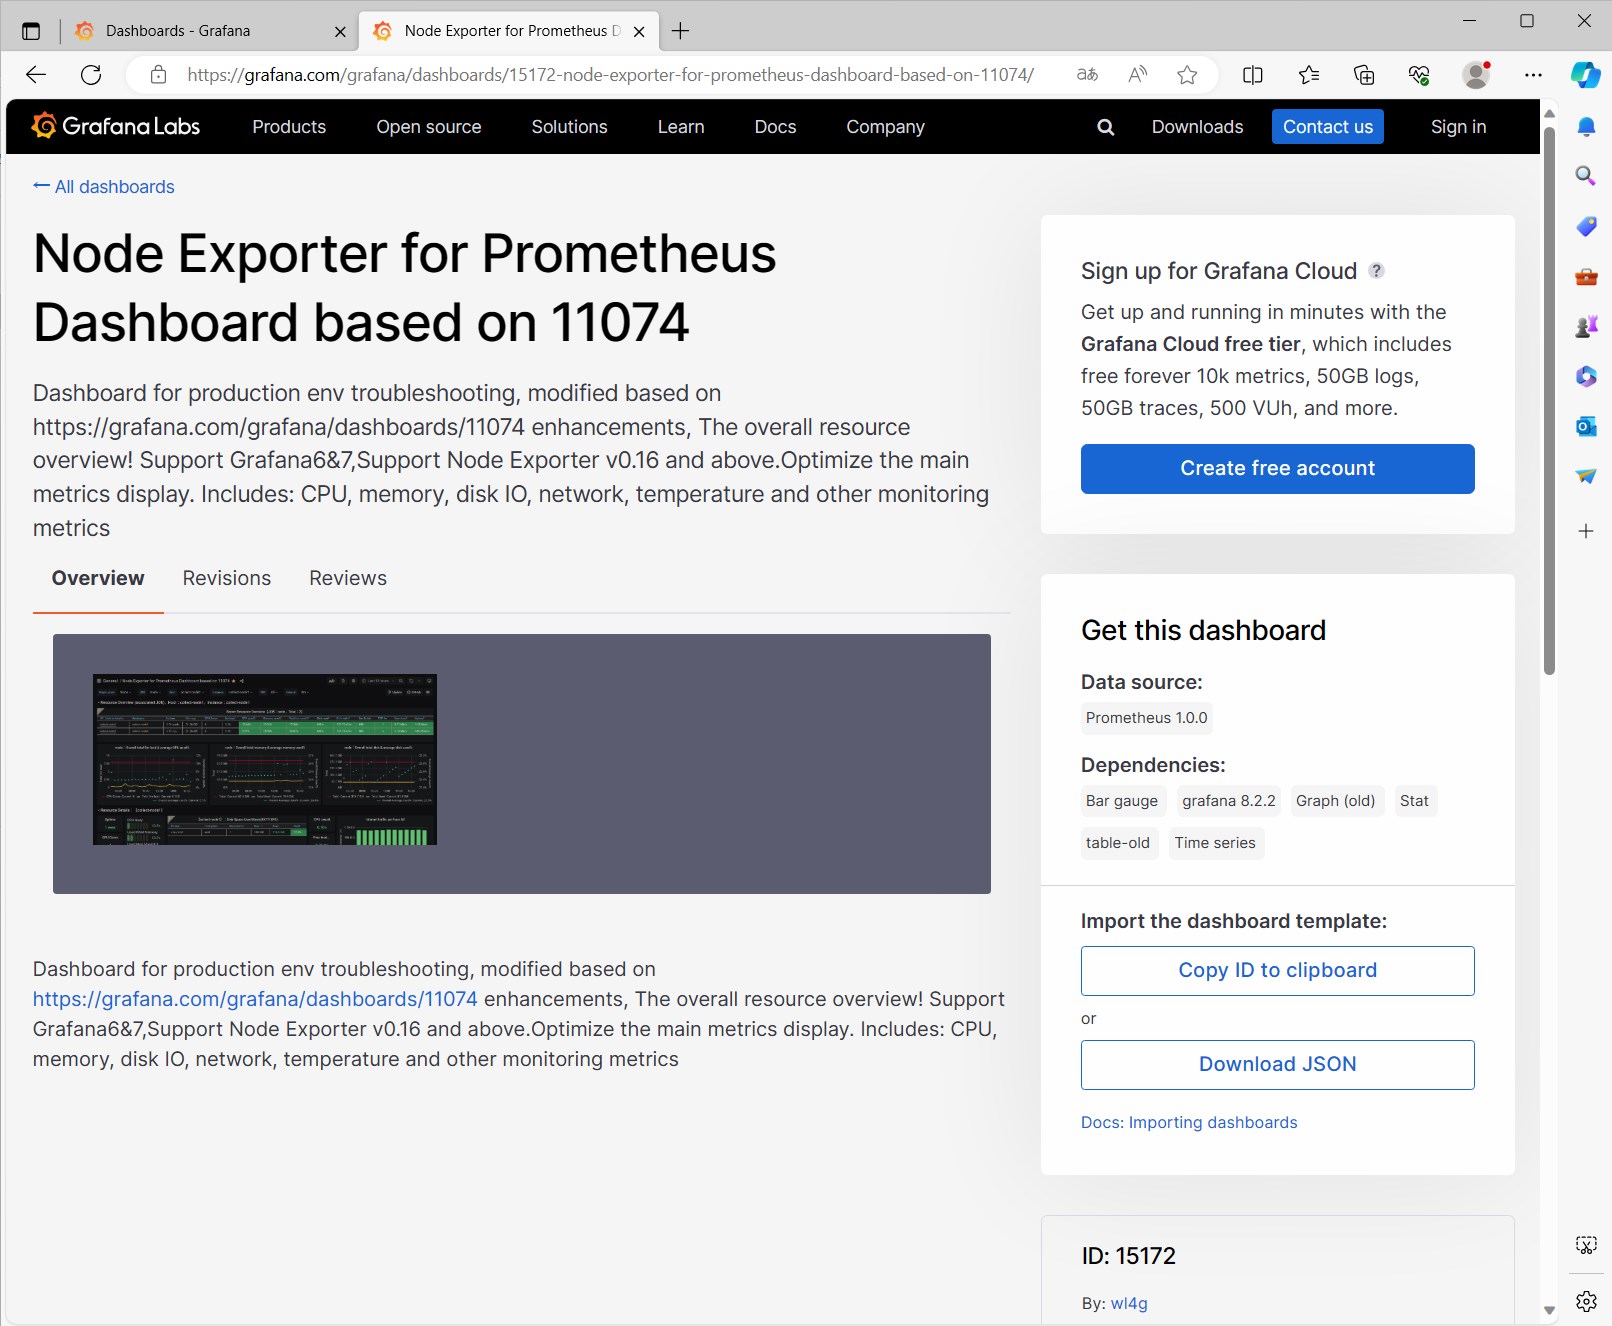 k8s-prometheus-grafana-node-exporter-dashboard